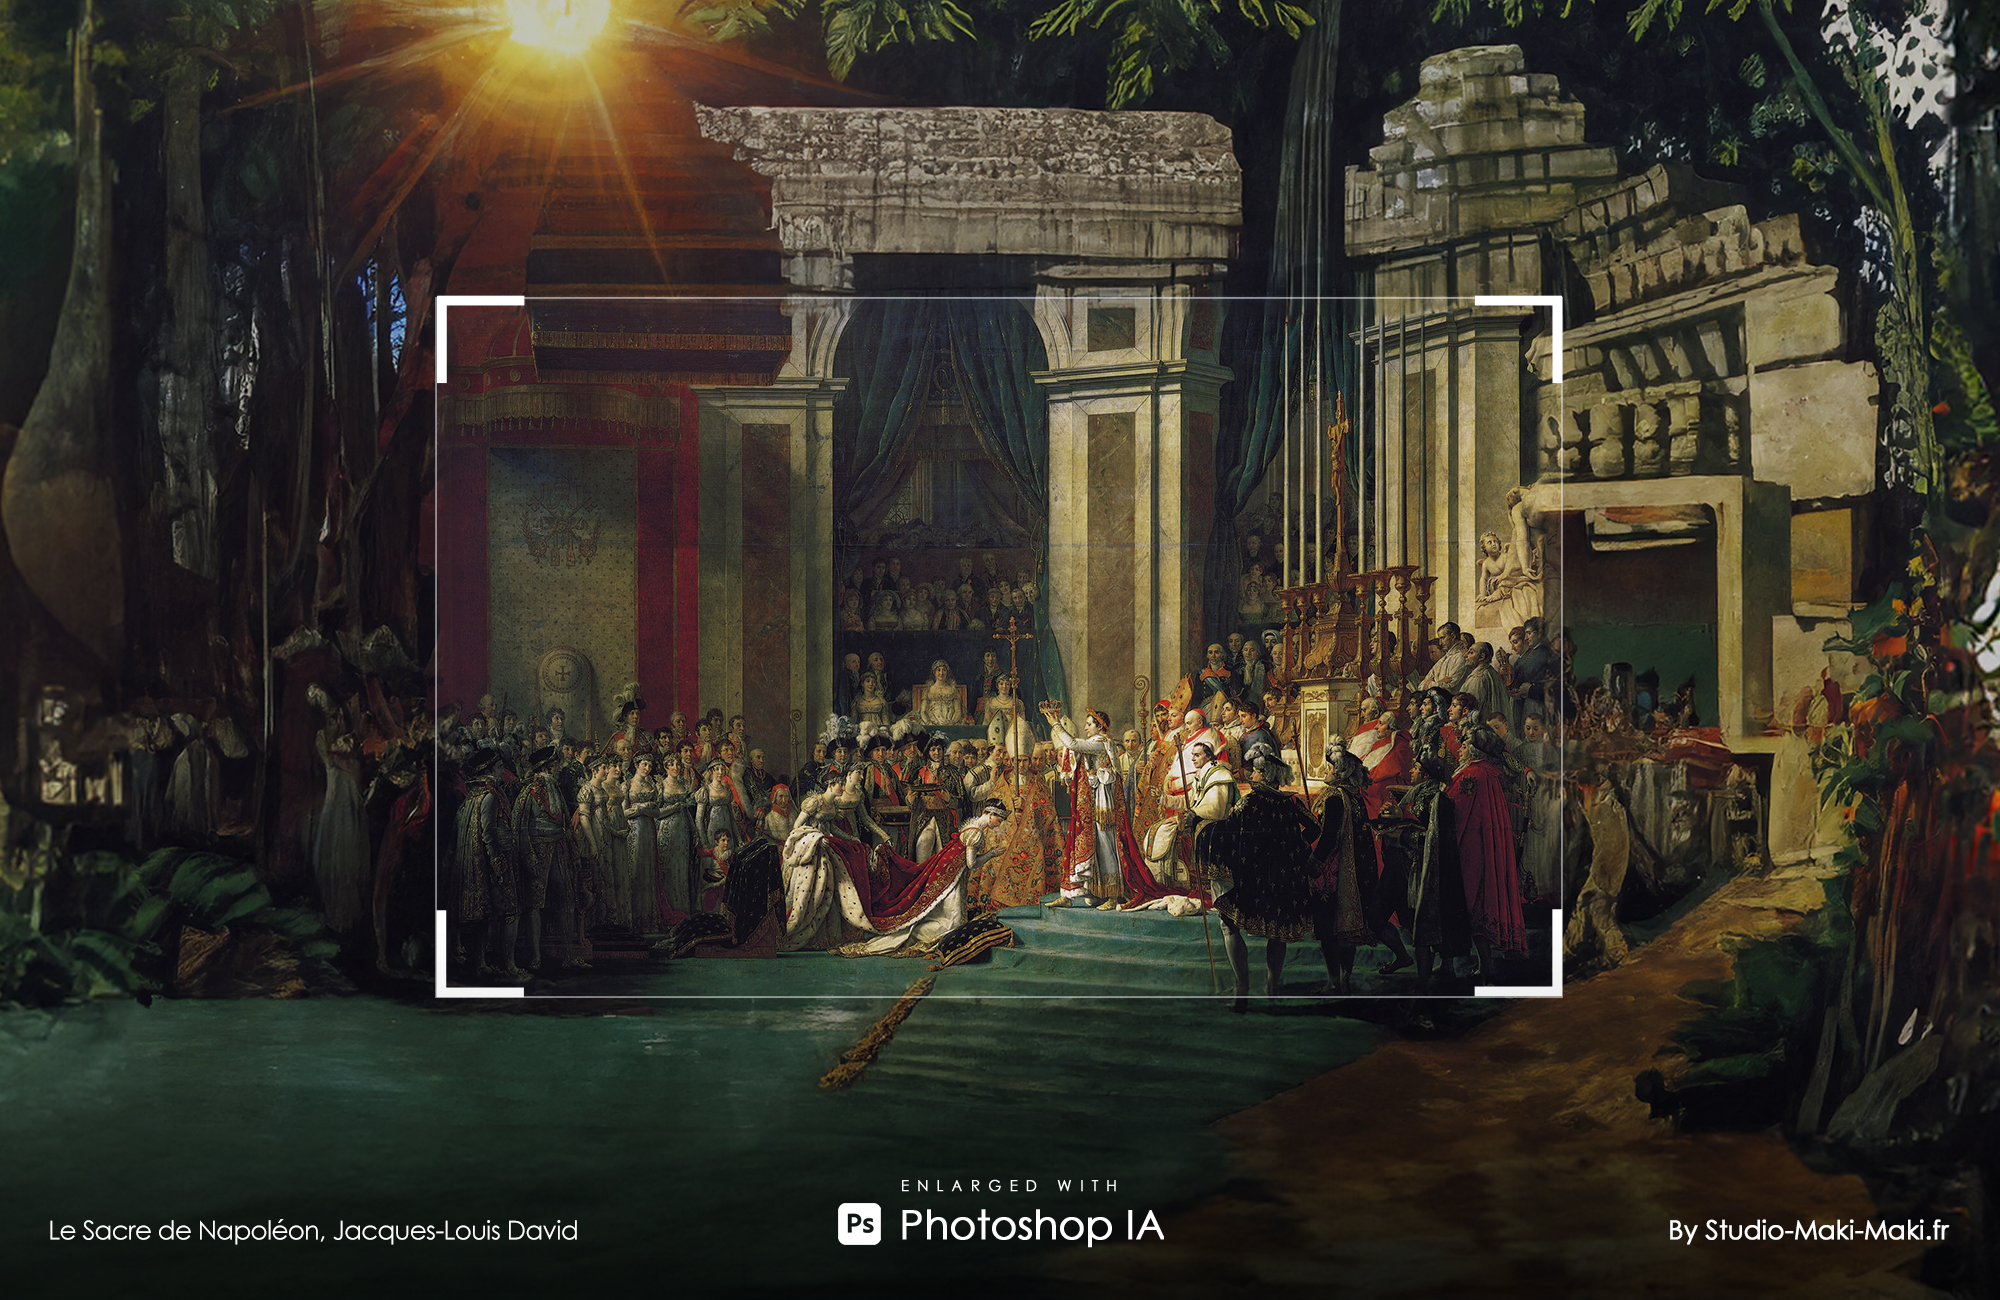 Le Sacre de Napoléon, Jacques-Louis David - Enlarged with Photoshop IA - By Studio Maki Maki